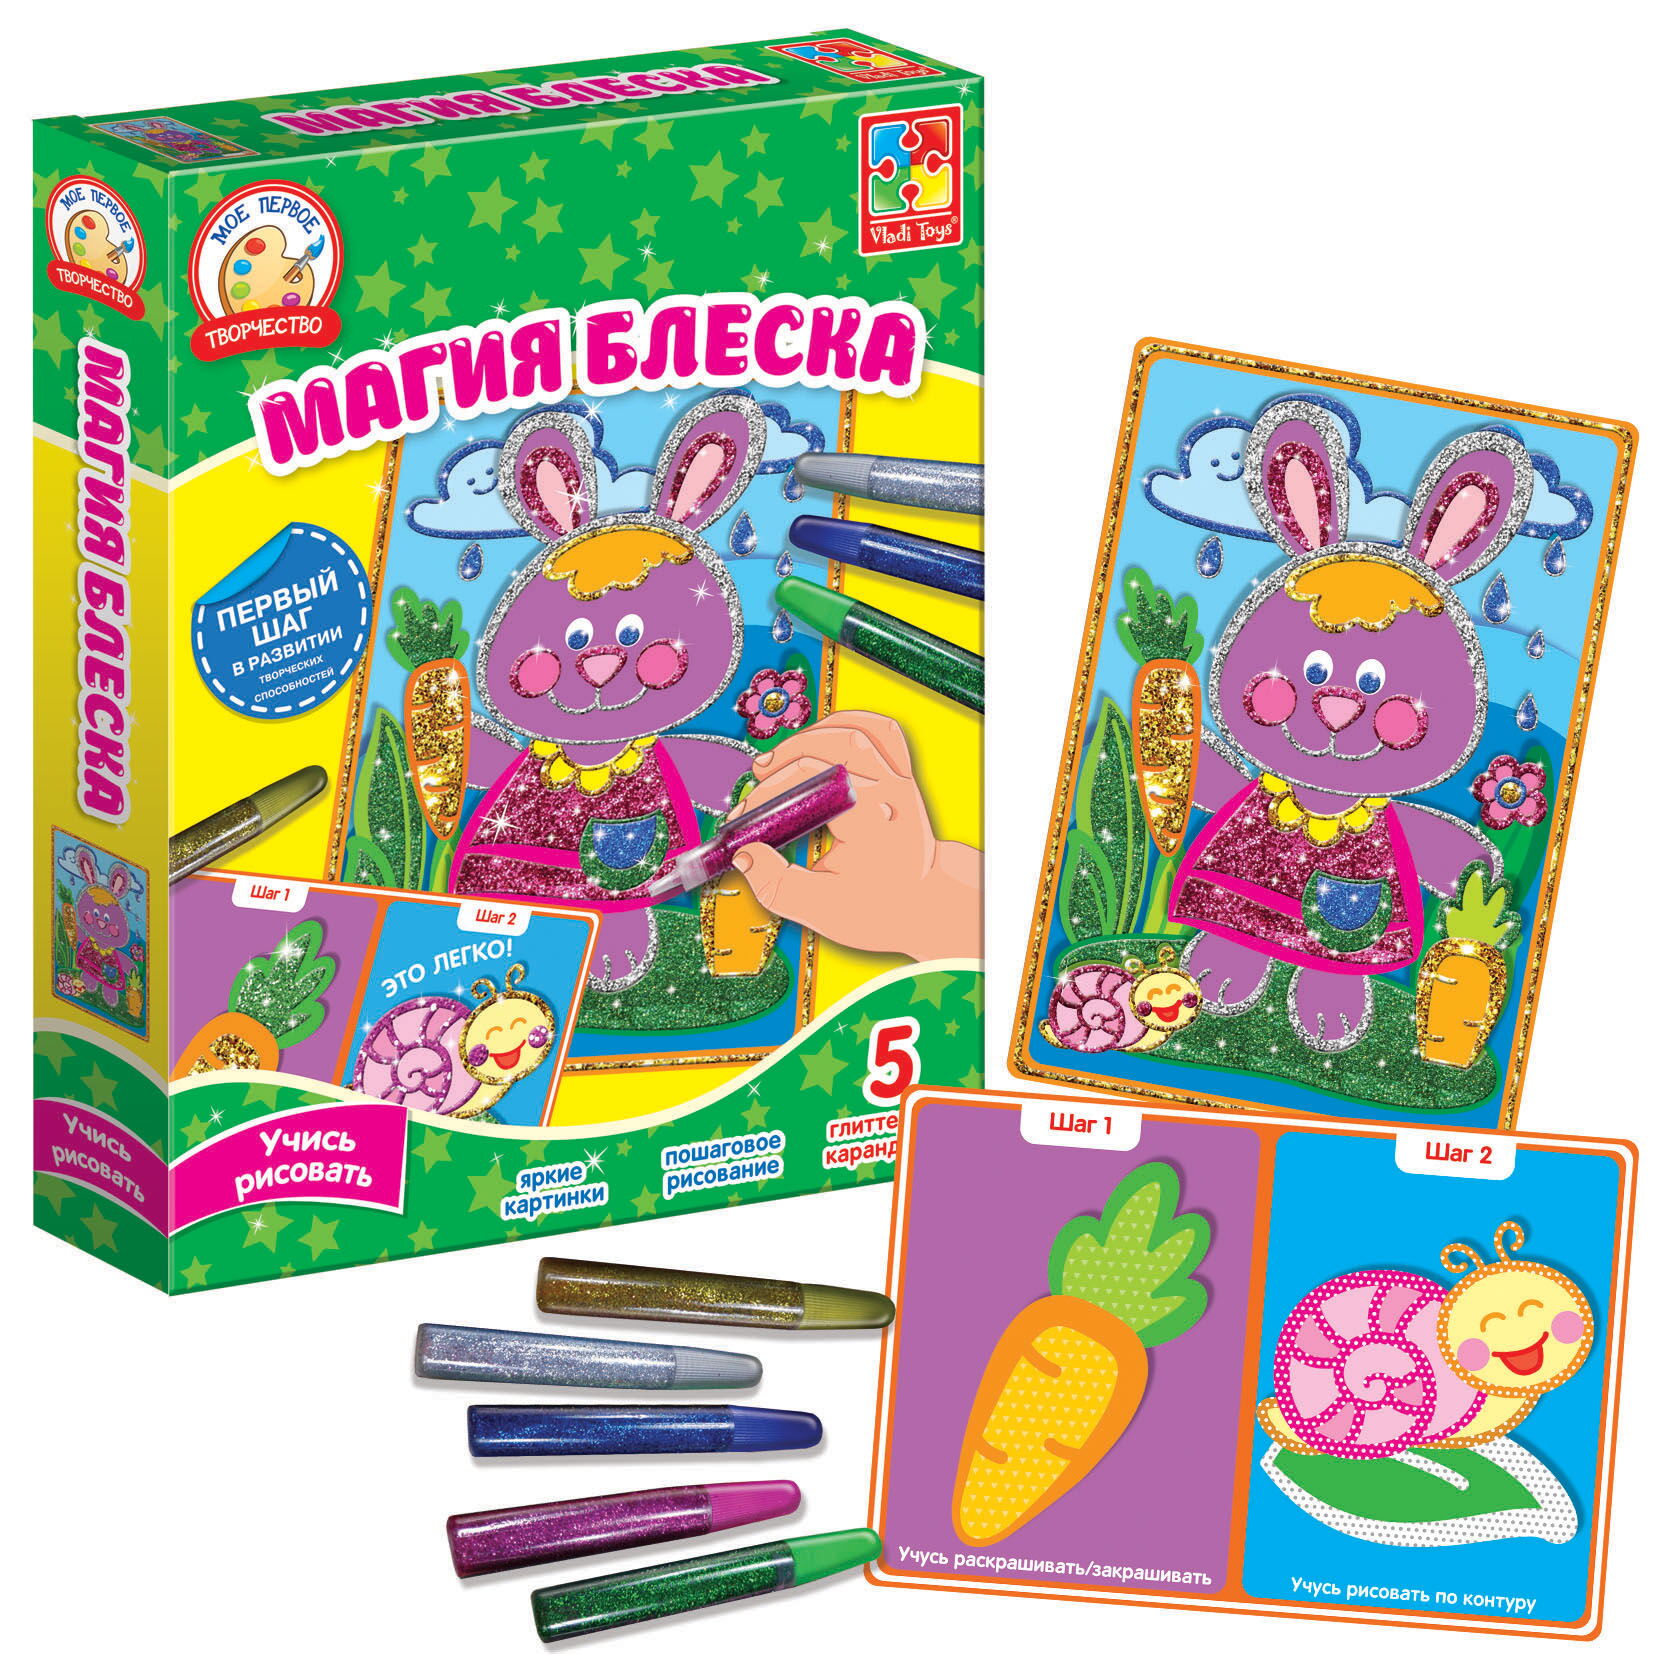 Детский набор для творчества Vladi Toys Магия блеска Зайка  VT4801-11 - размеры